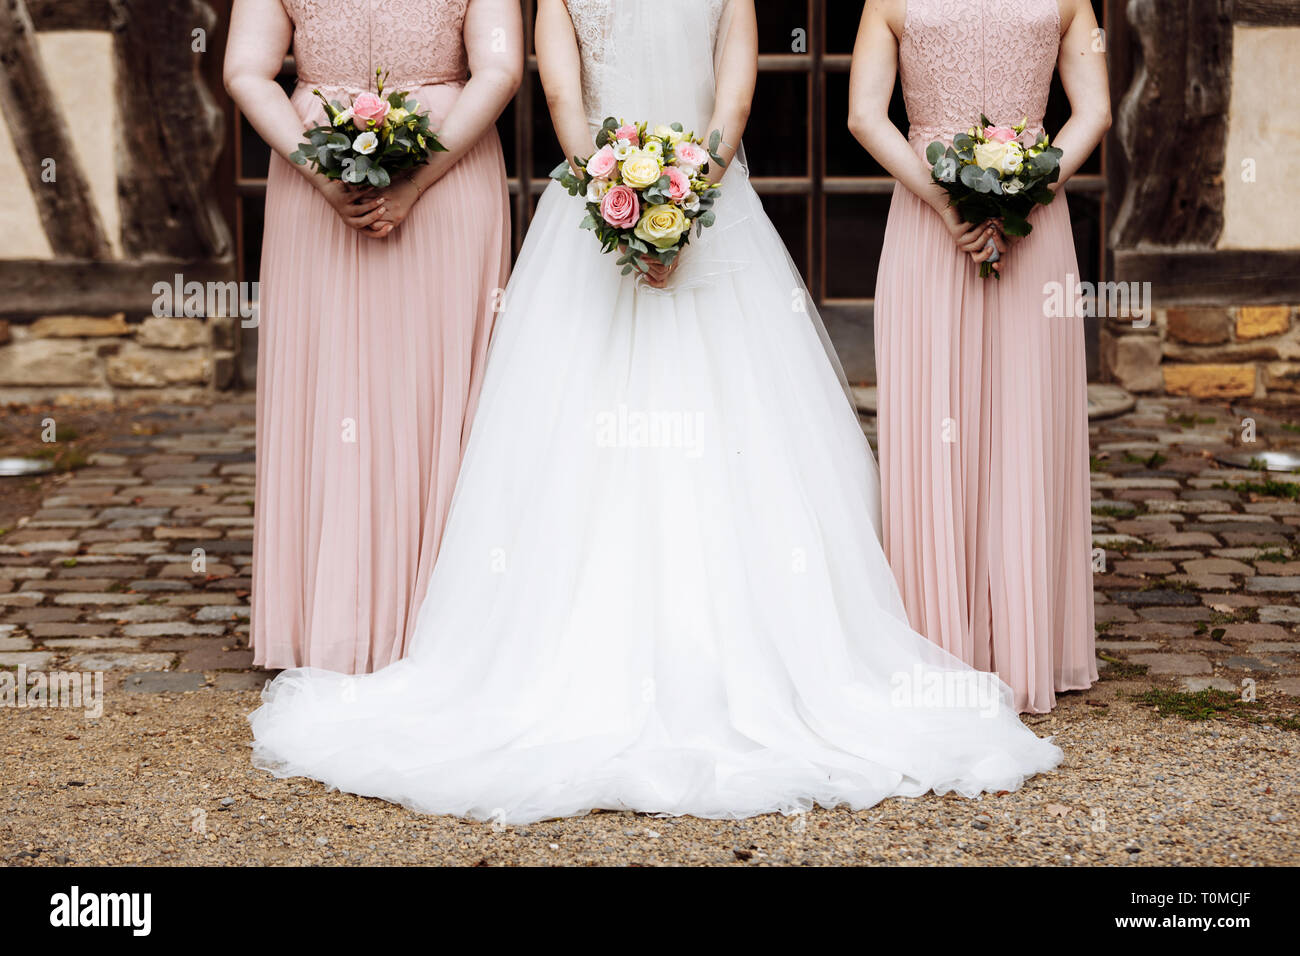 La novia y las damas de honor en un elegante vestido está de pie y sosteniendo la mano ramilletes flores de color rosa pastel y verdes con cinta en la naturaleza.